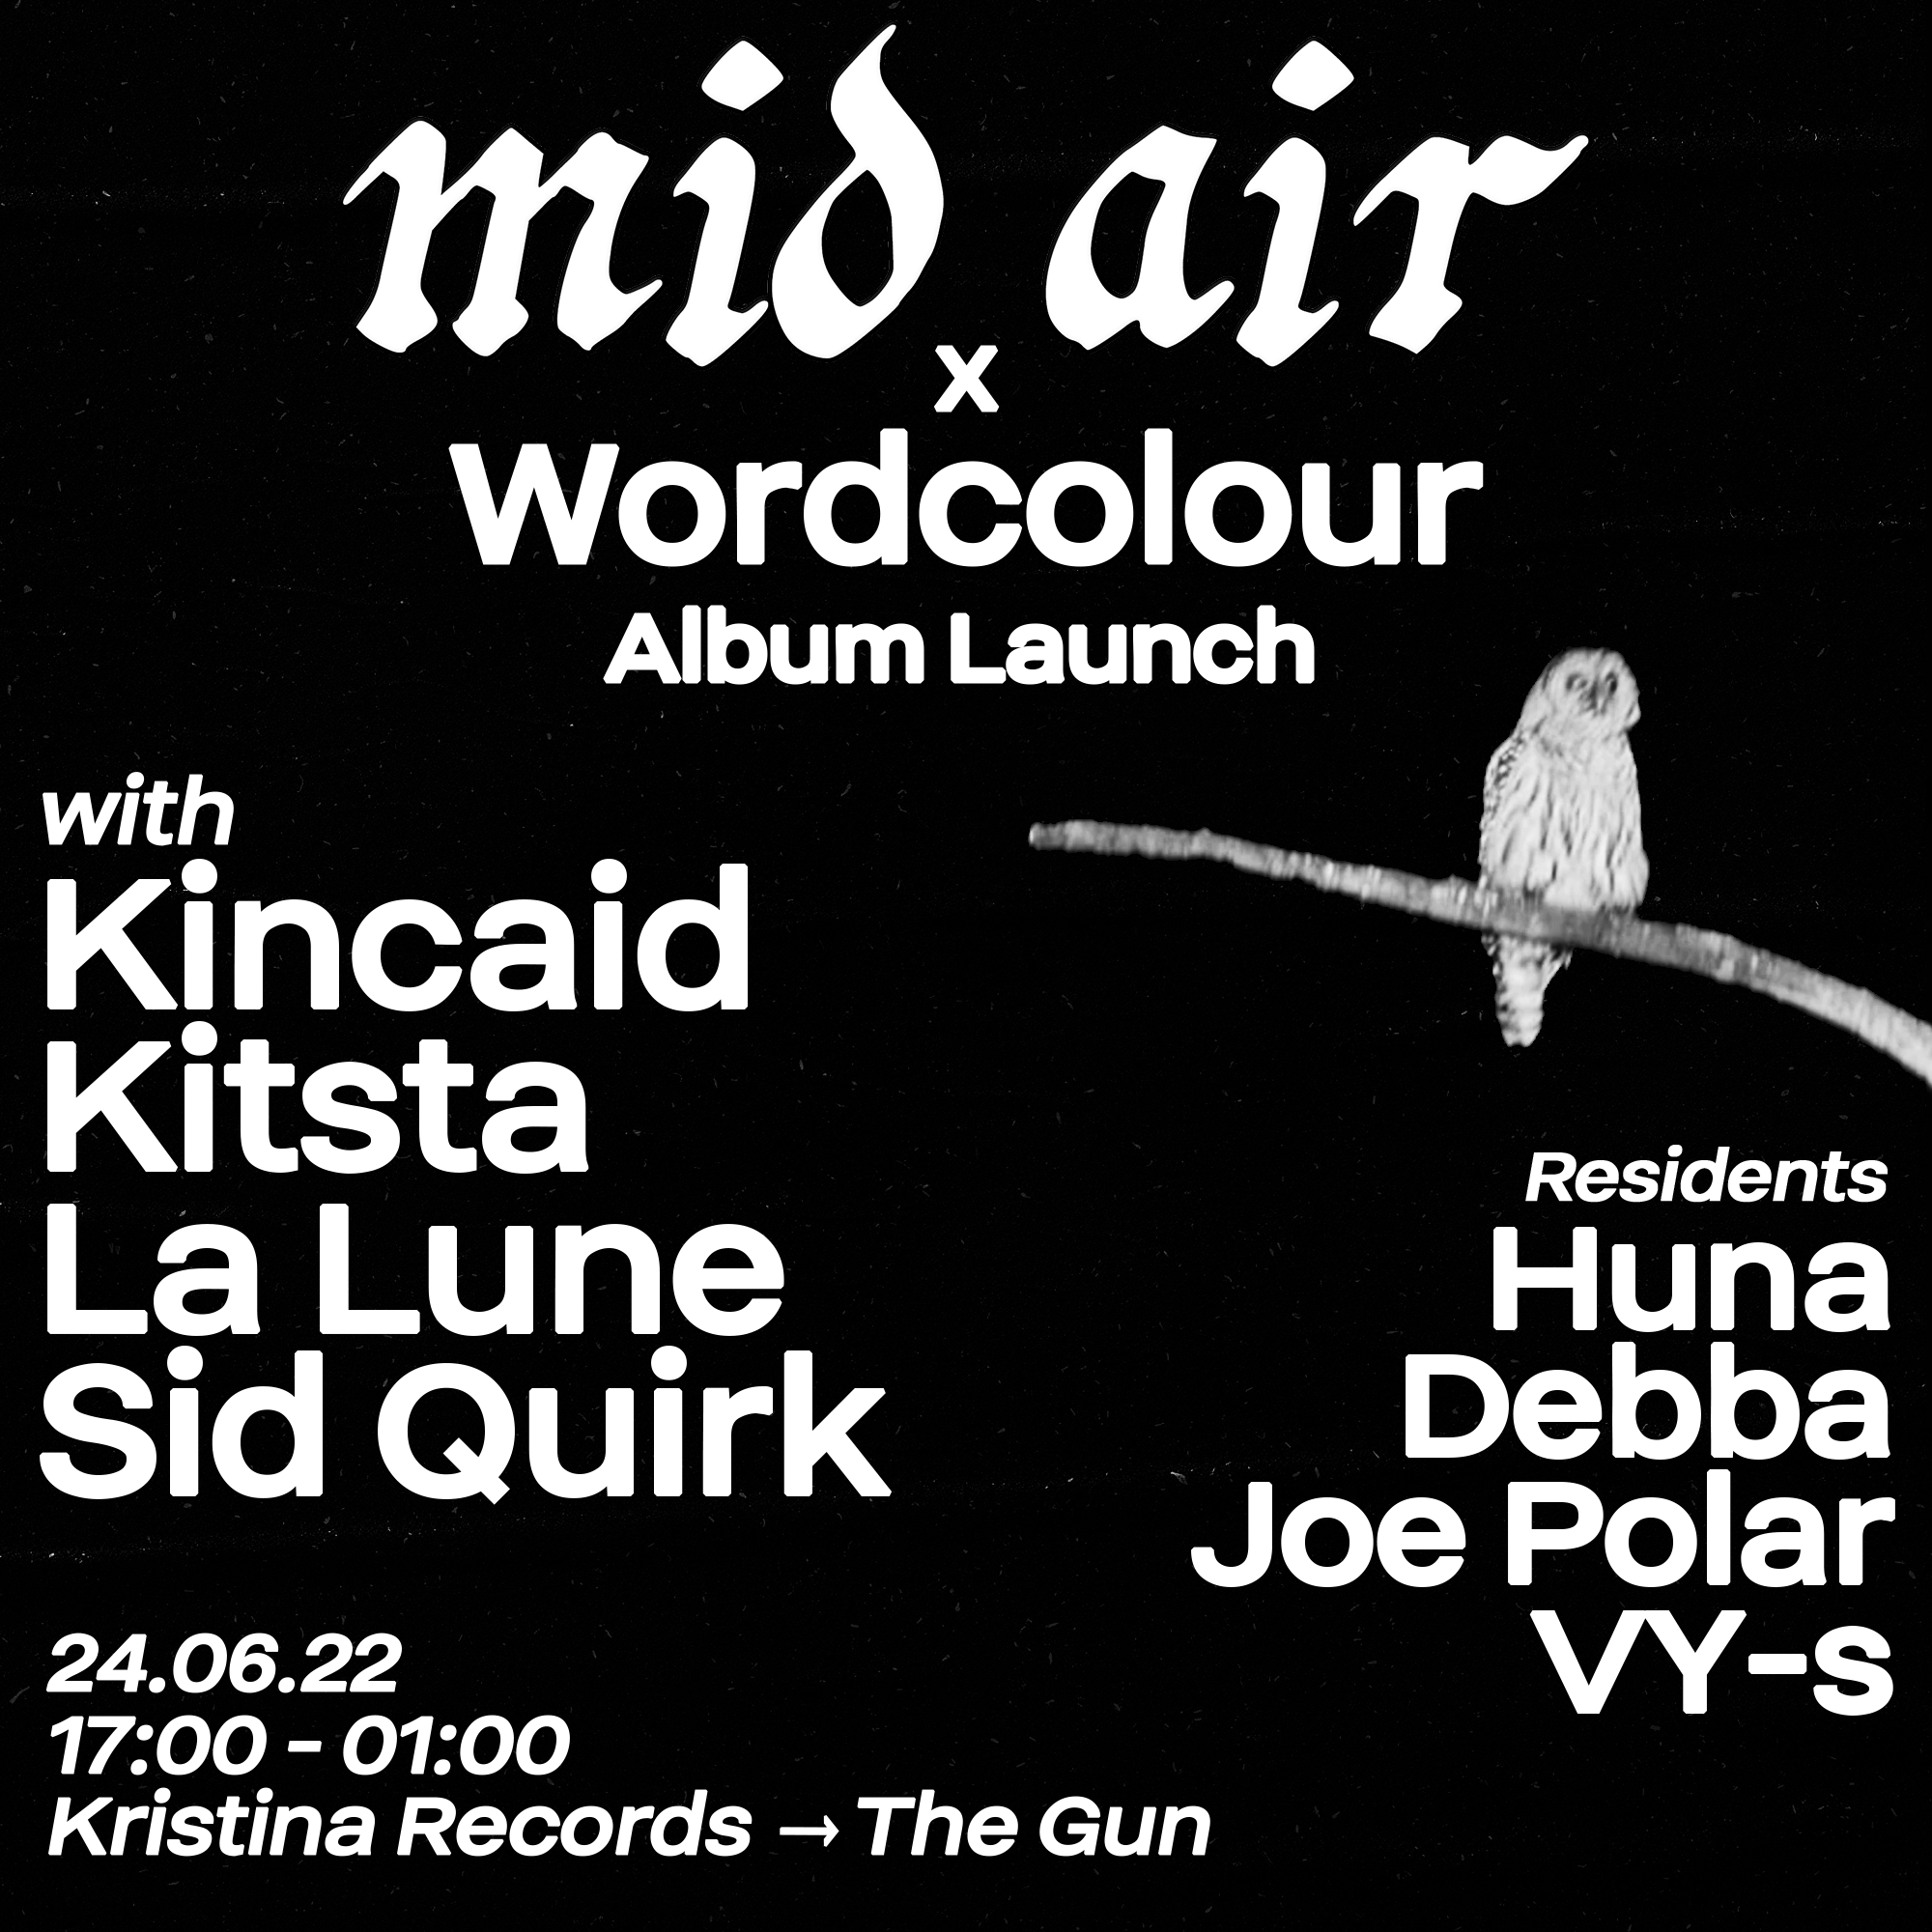 Mid Air x Wordcolour Album Launch - フライヤー表